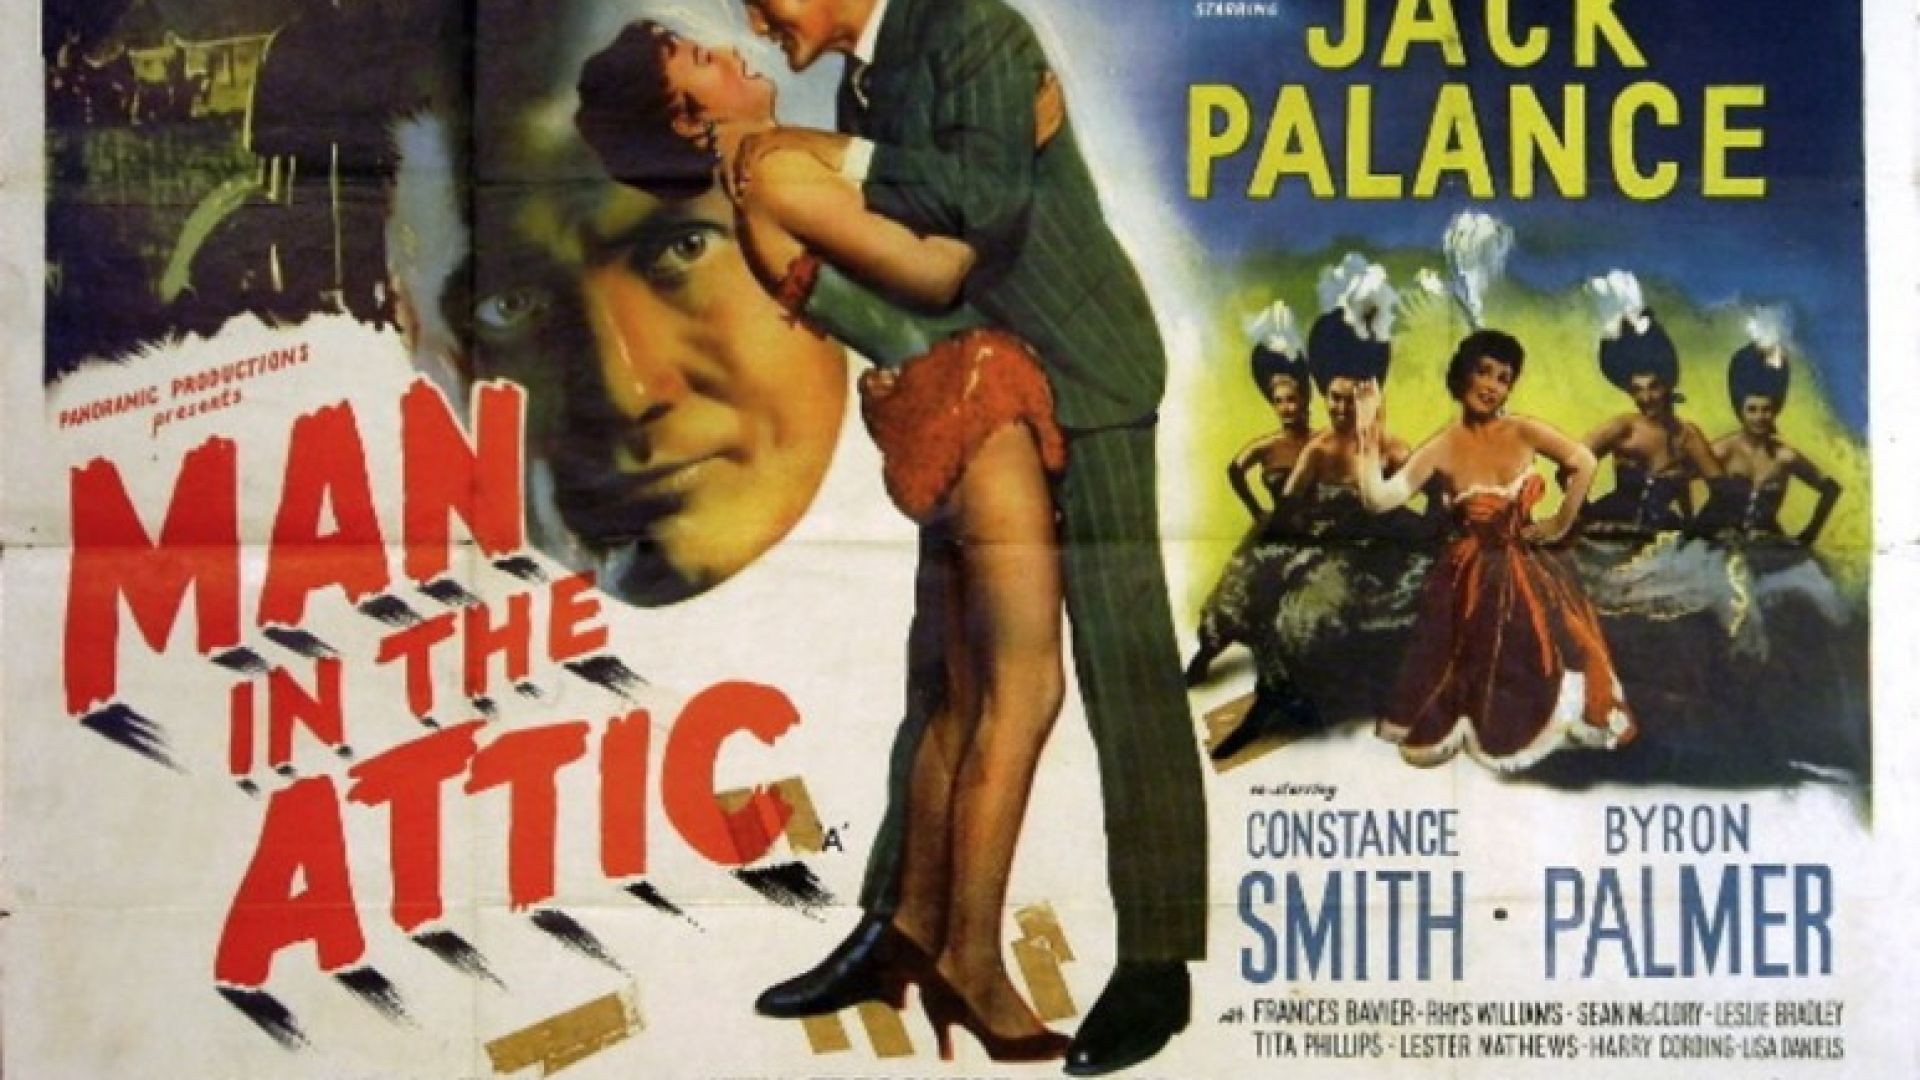 Man In The Attic (1953)